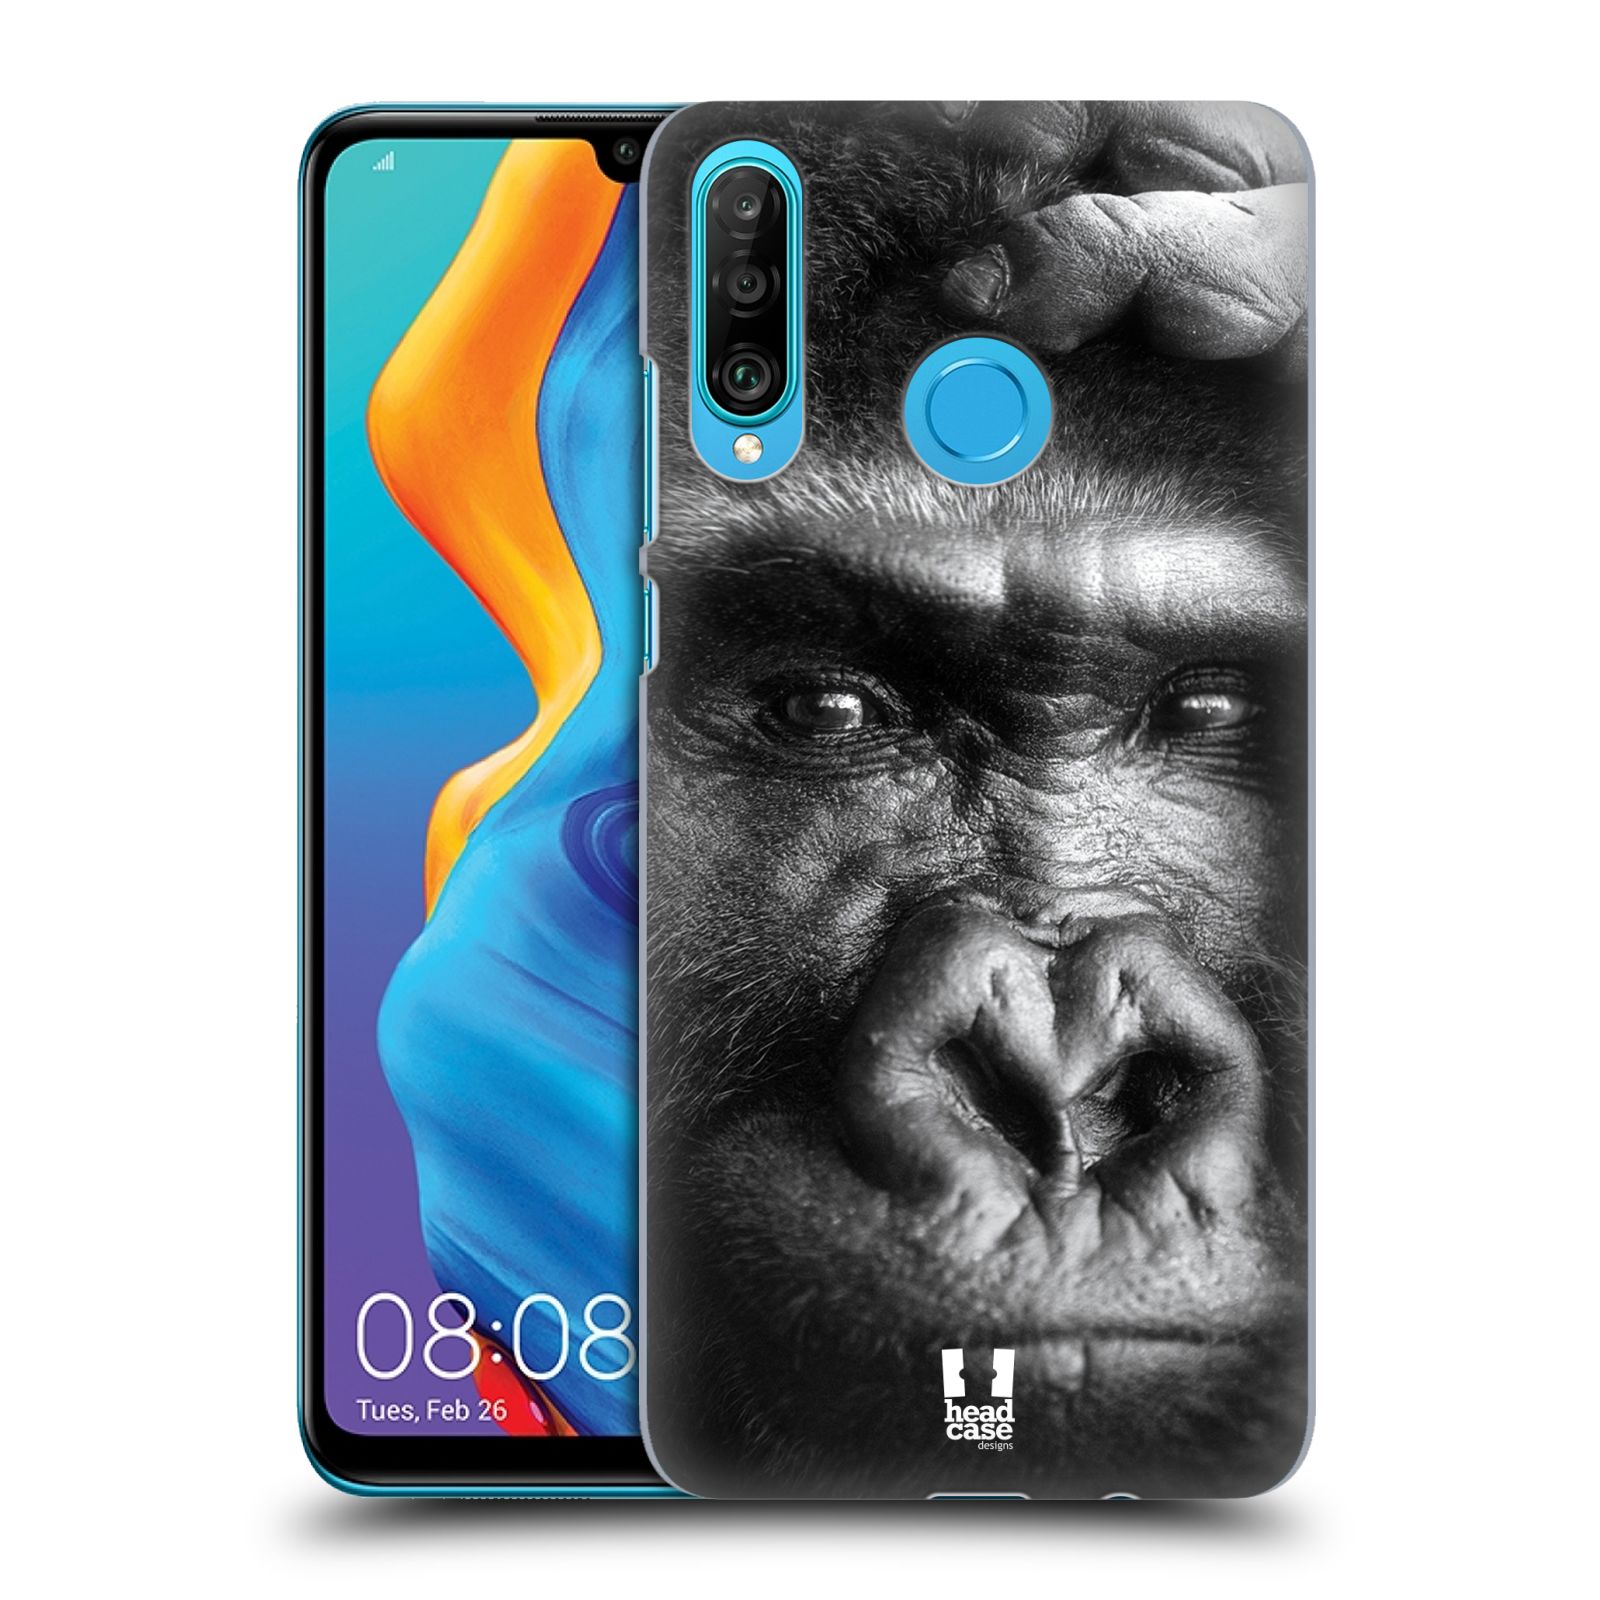 Pouzdro na mobil Huawei P30 LITE - HEAD CASE - vzor Divočina, Divoký život a zvířata foto GORILA TVÁŘ